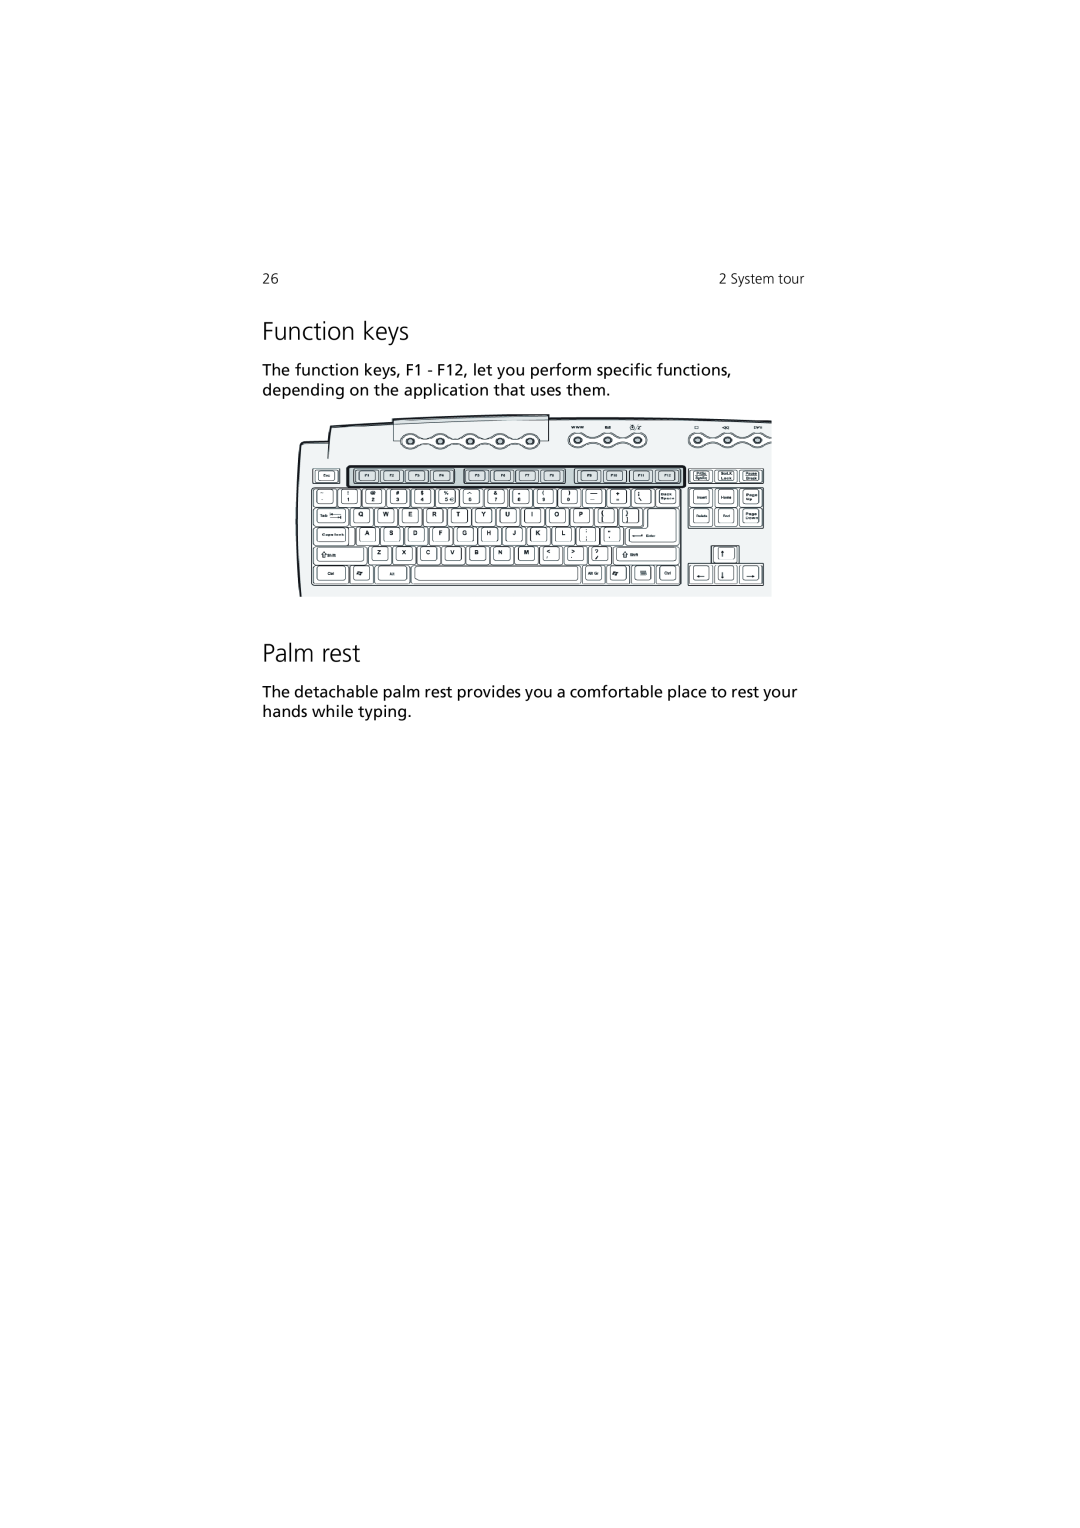 Acer 7600 manual Function keys, Palm rest 